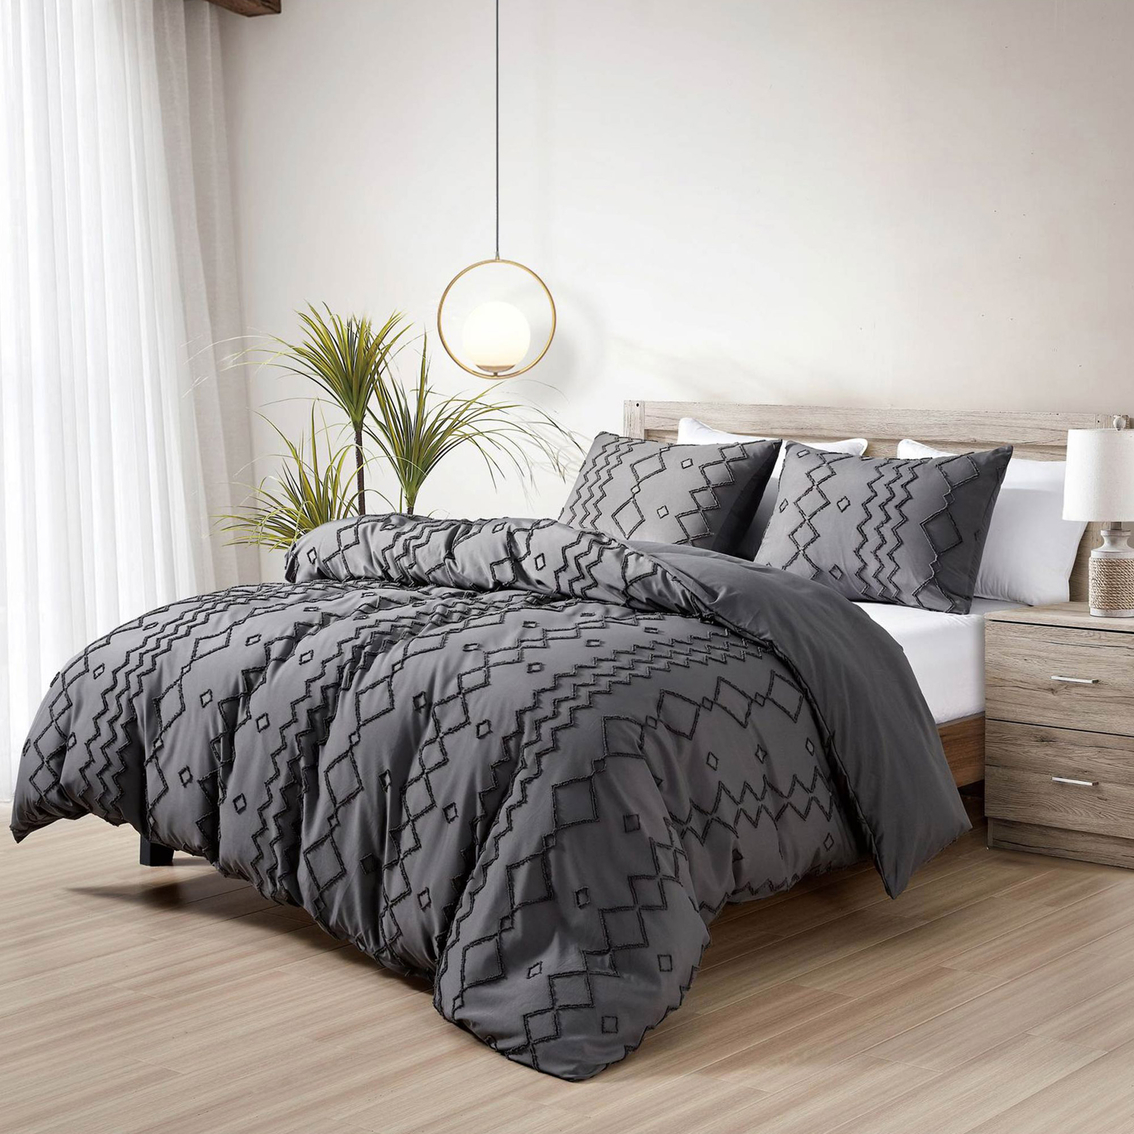 Bibb Home Tufted 3 Pc. Duvet Cover Set | Bedding Sets | Household ...